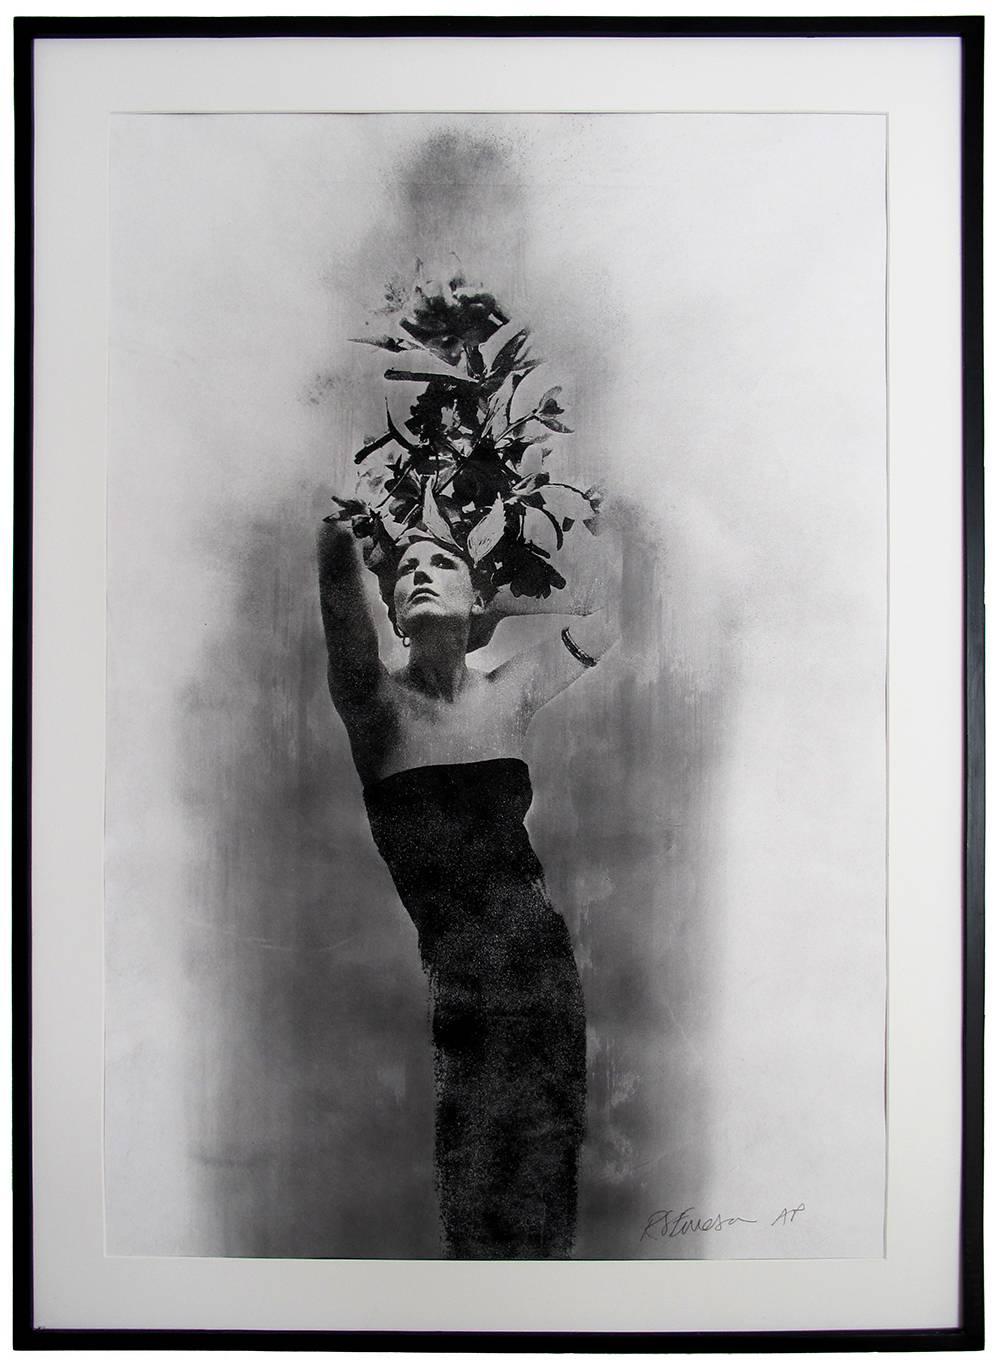 Siebdruck aus Seide in Mischtechnik auf Papier, weibliches Porträt – Photograph von Rosie Emerson